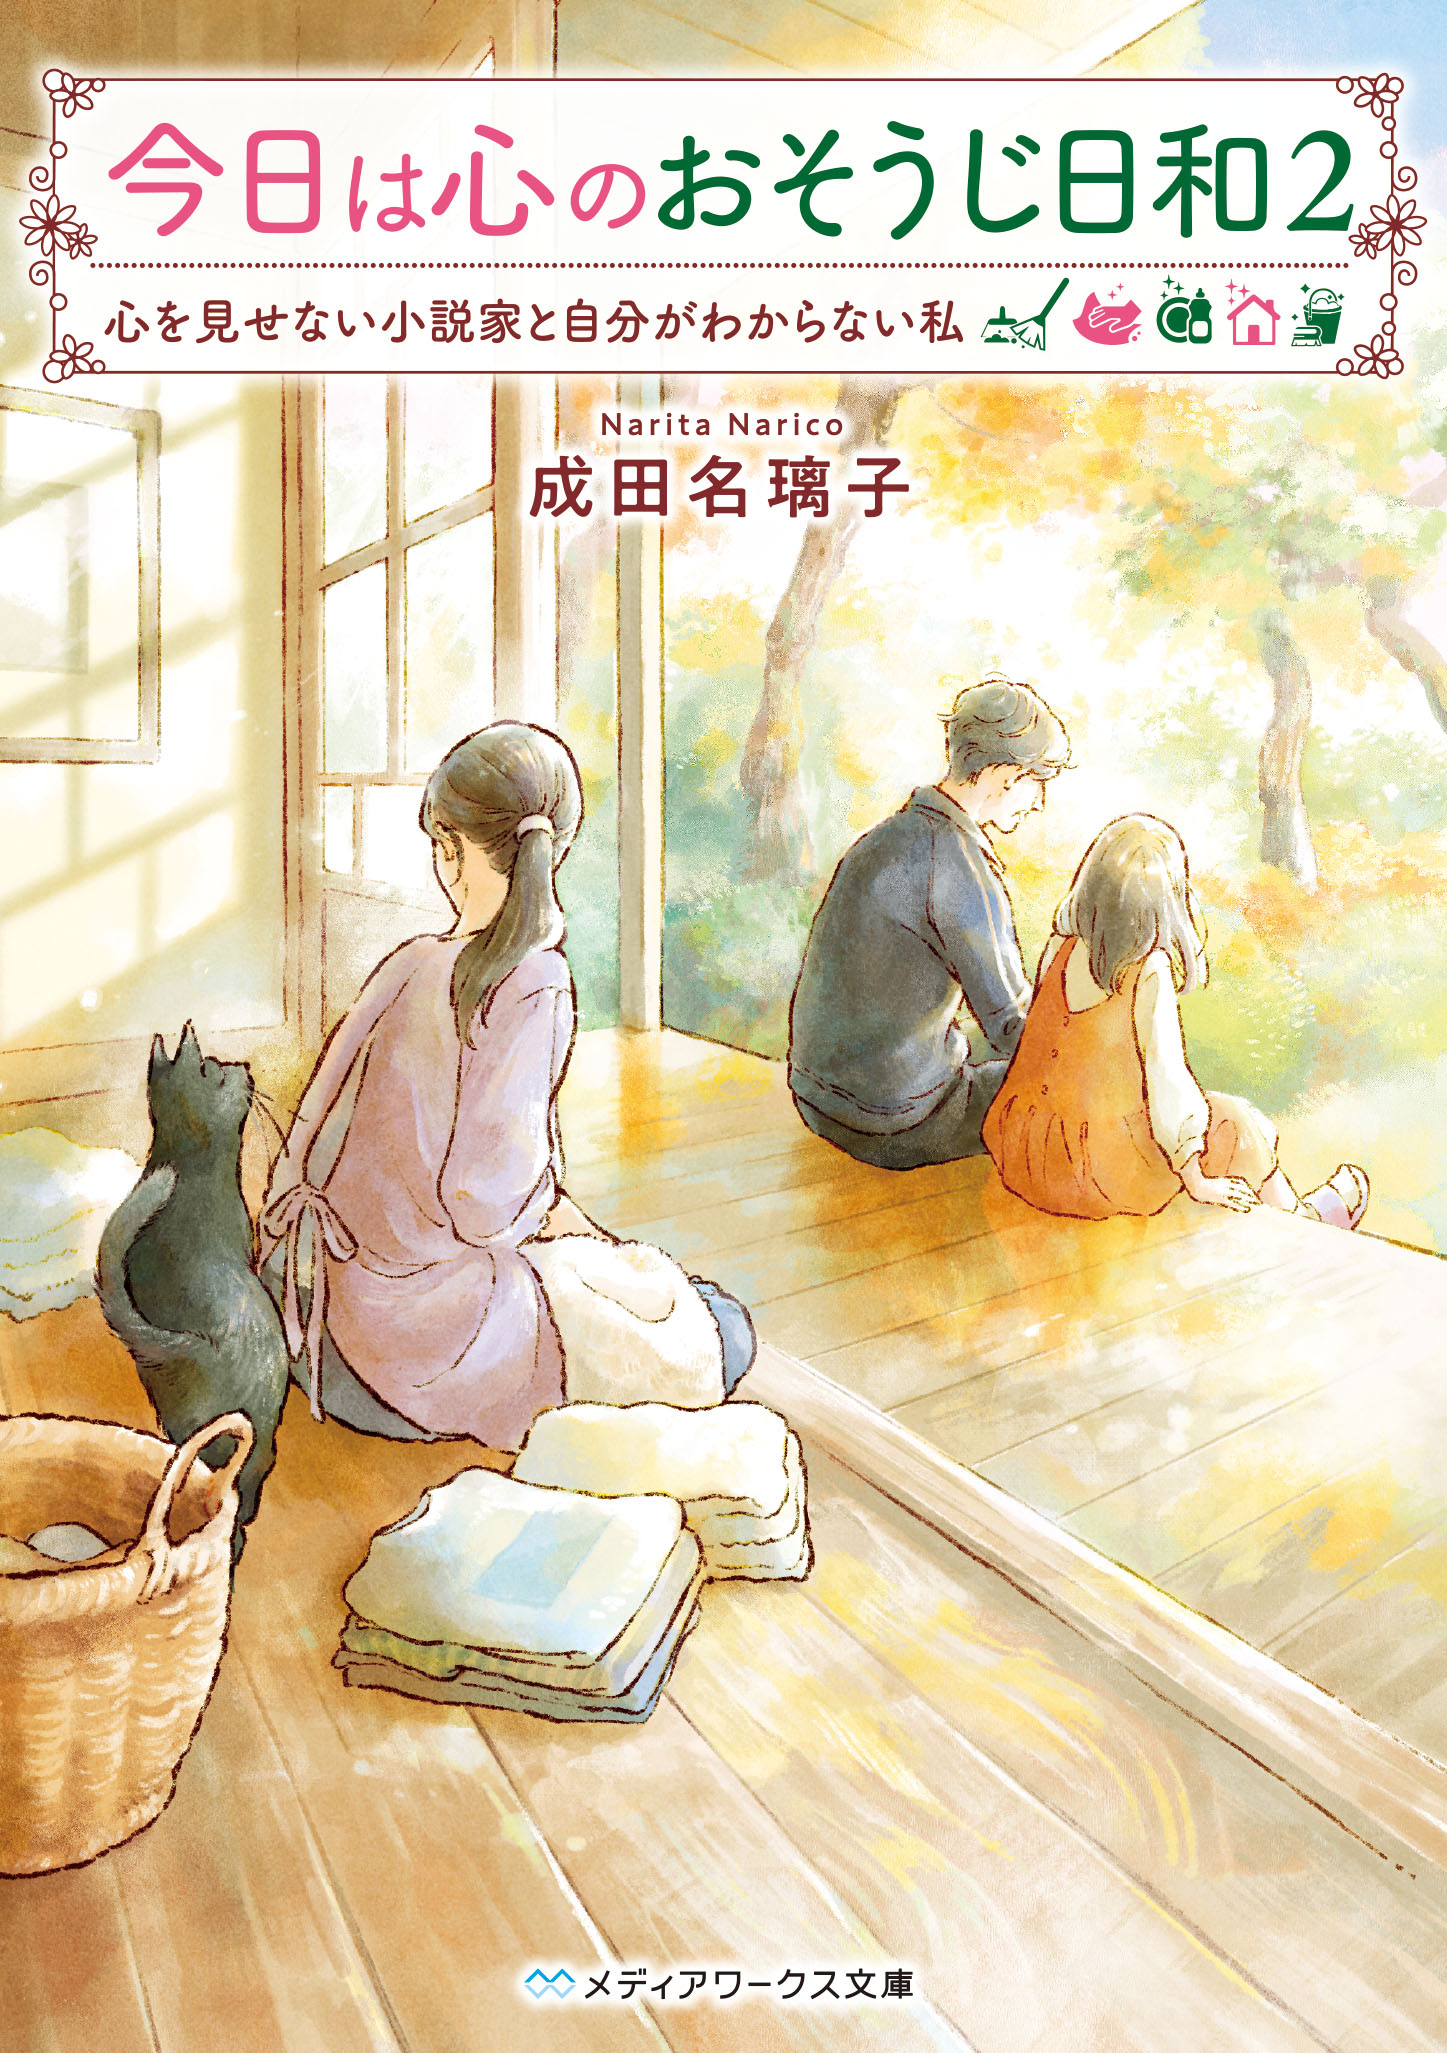 Kadokawa公式ショップ サリシノハラ 47 小説 本 カドカワストア オリジナル特典 本 関連グッズ Blu Ray Dvd Cd